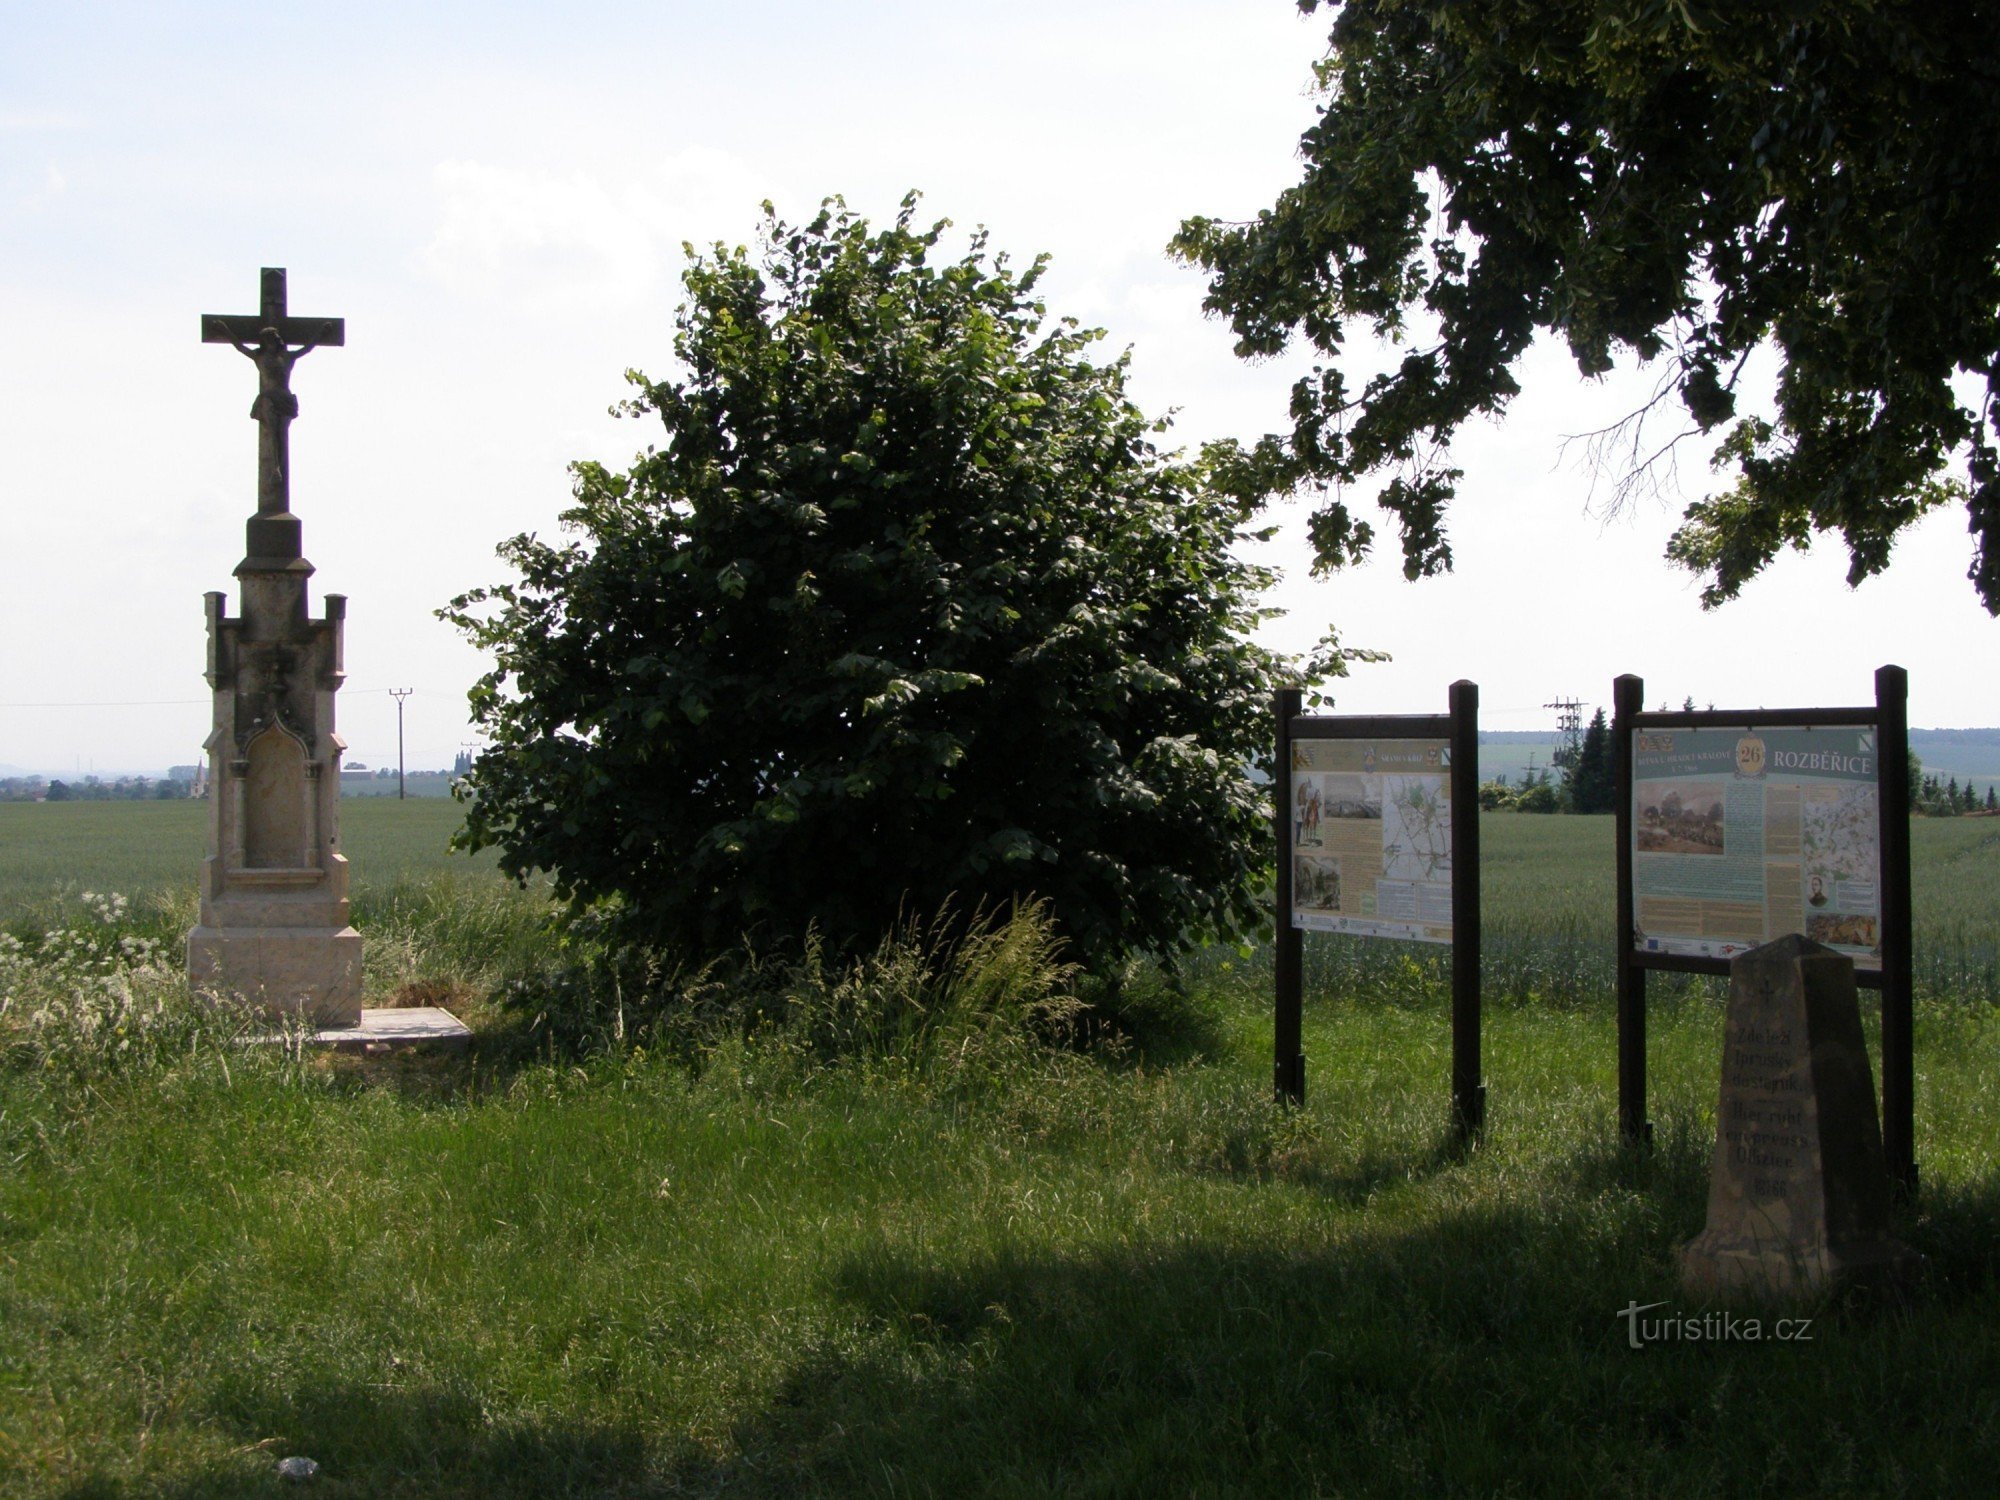 Encruzilhada turística de Rozběřice - perto da cruz de Šrám